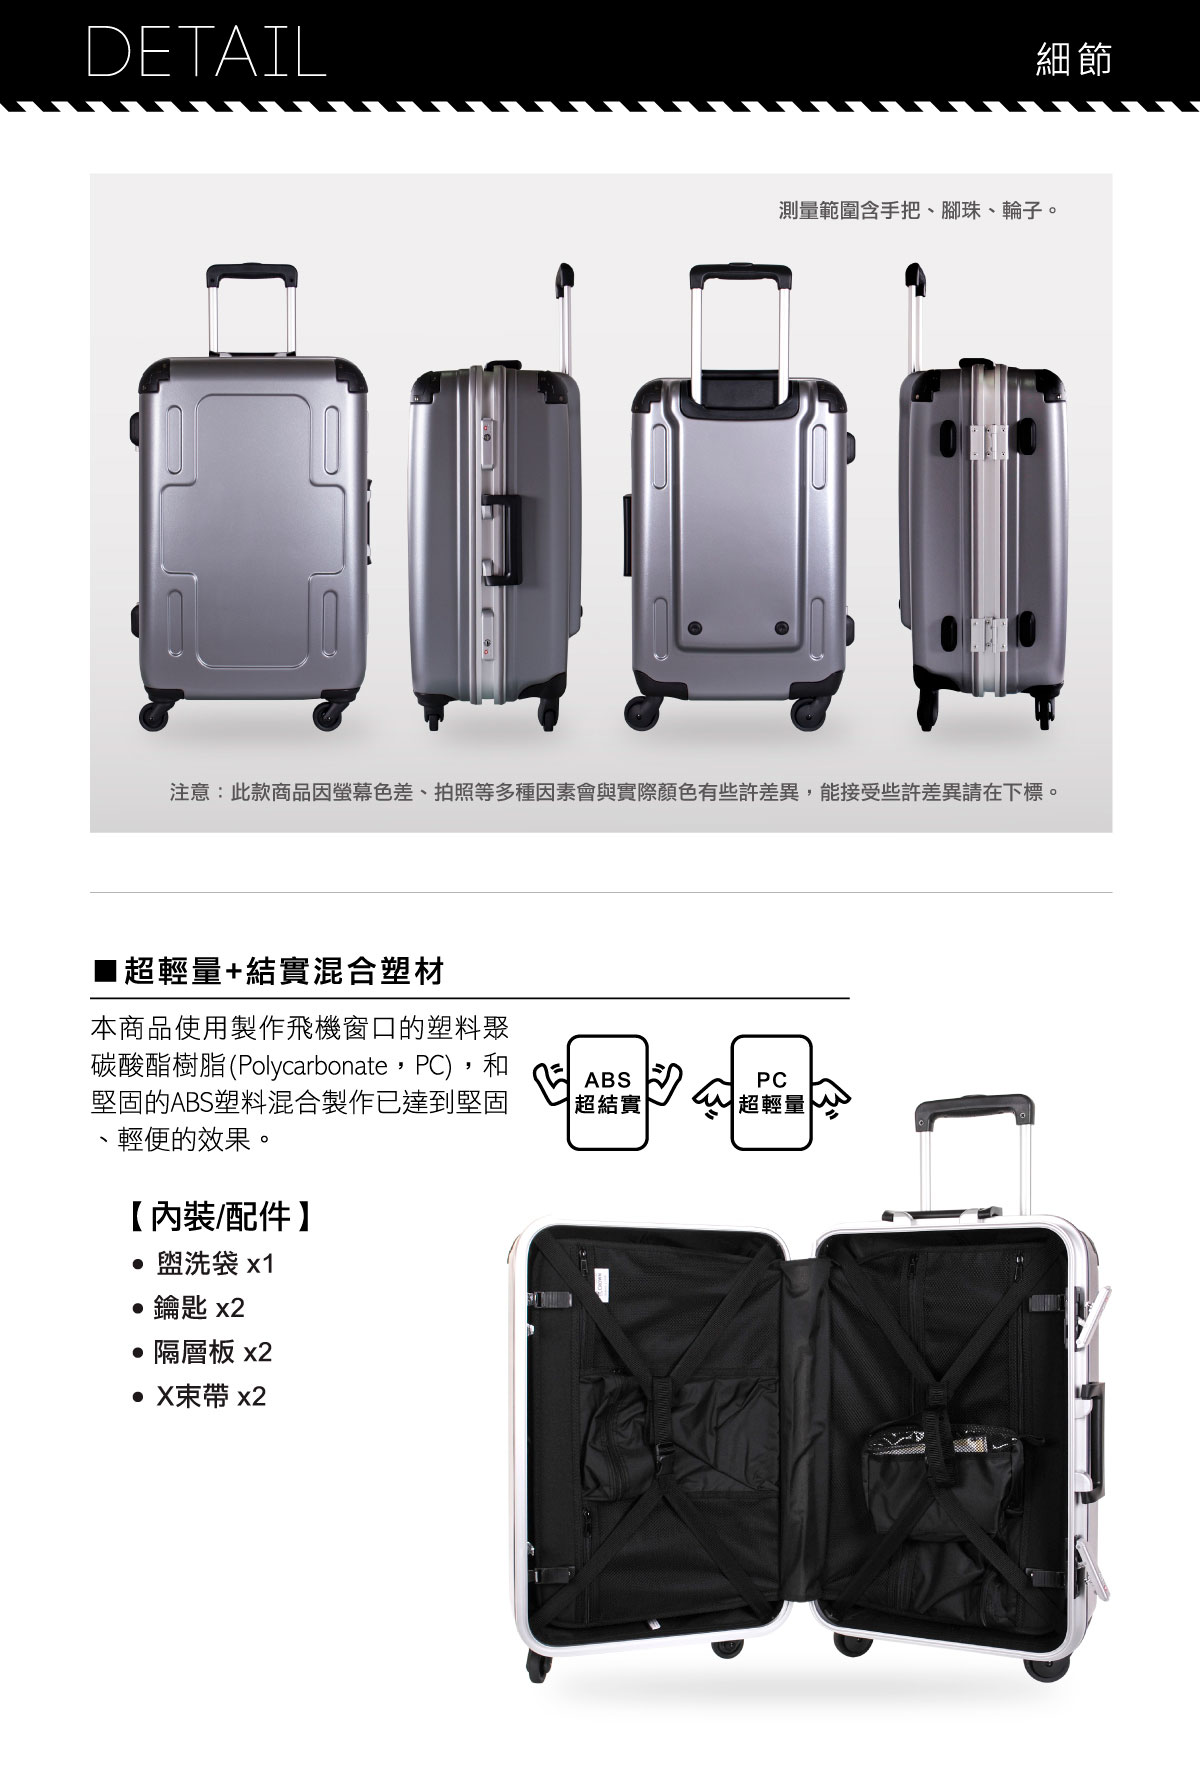 Crown 炫彩鋁框硬殼行李箱使用聚碳酸酯樹脂(PC)和ABS塑料混合製作,超輕量+結實混合塑料.